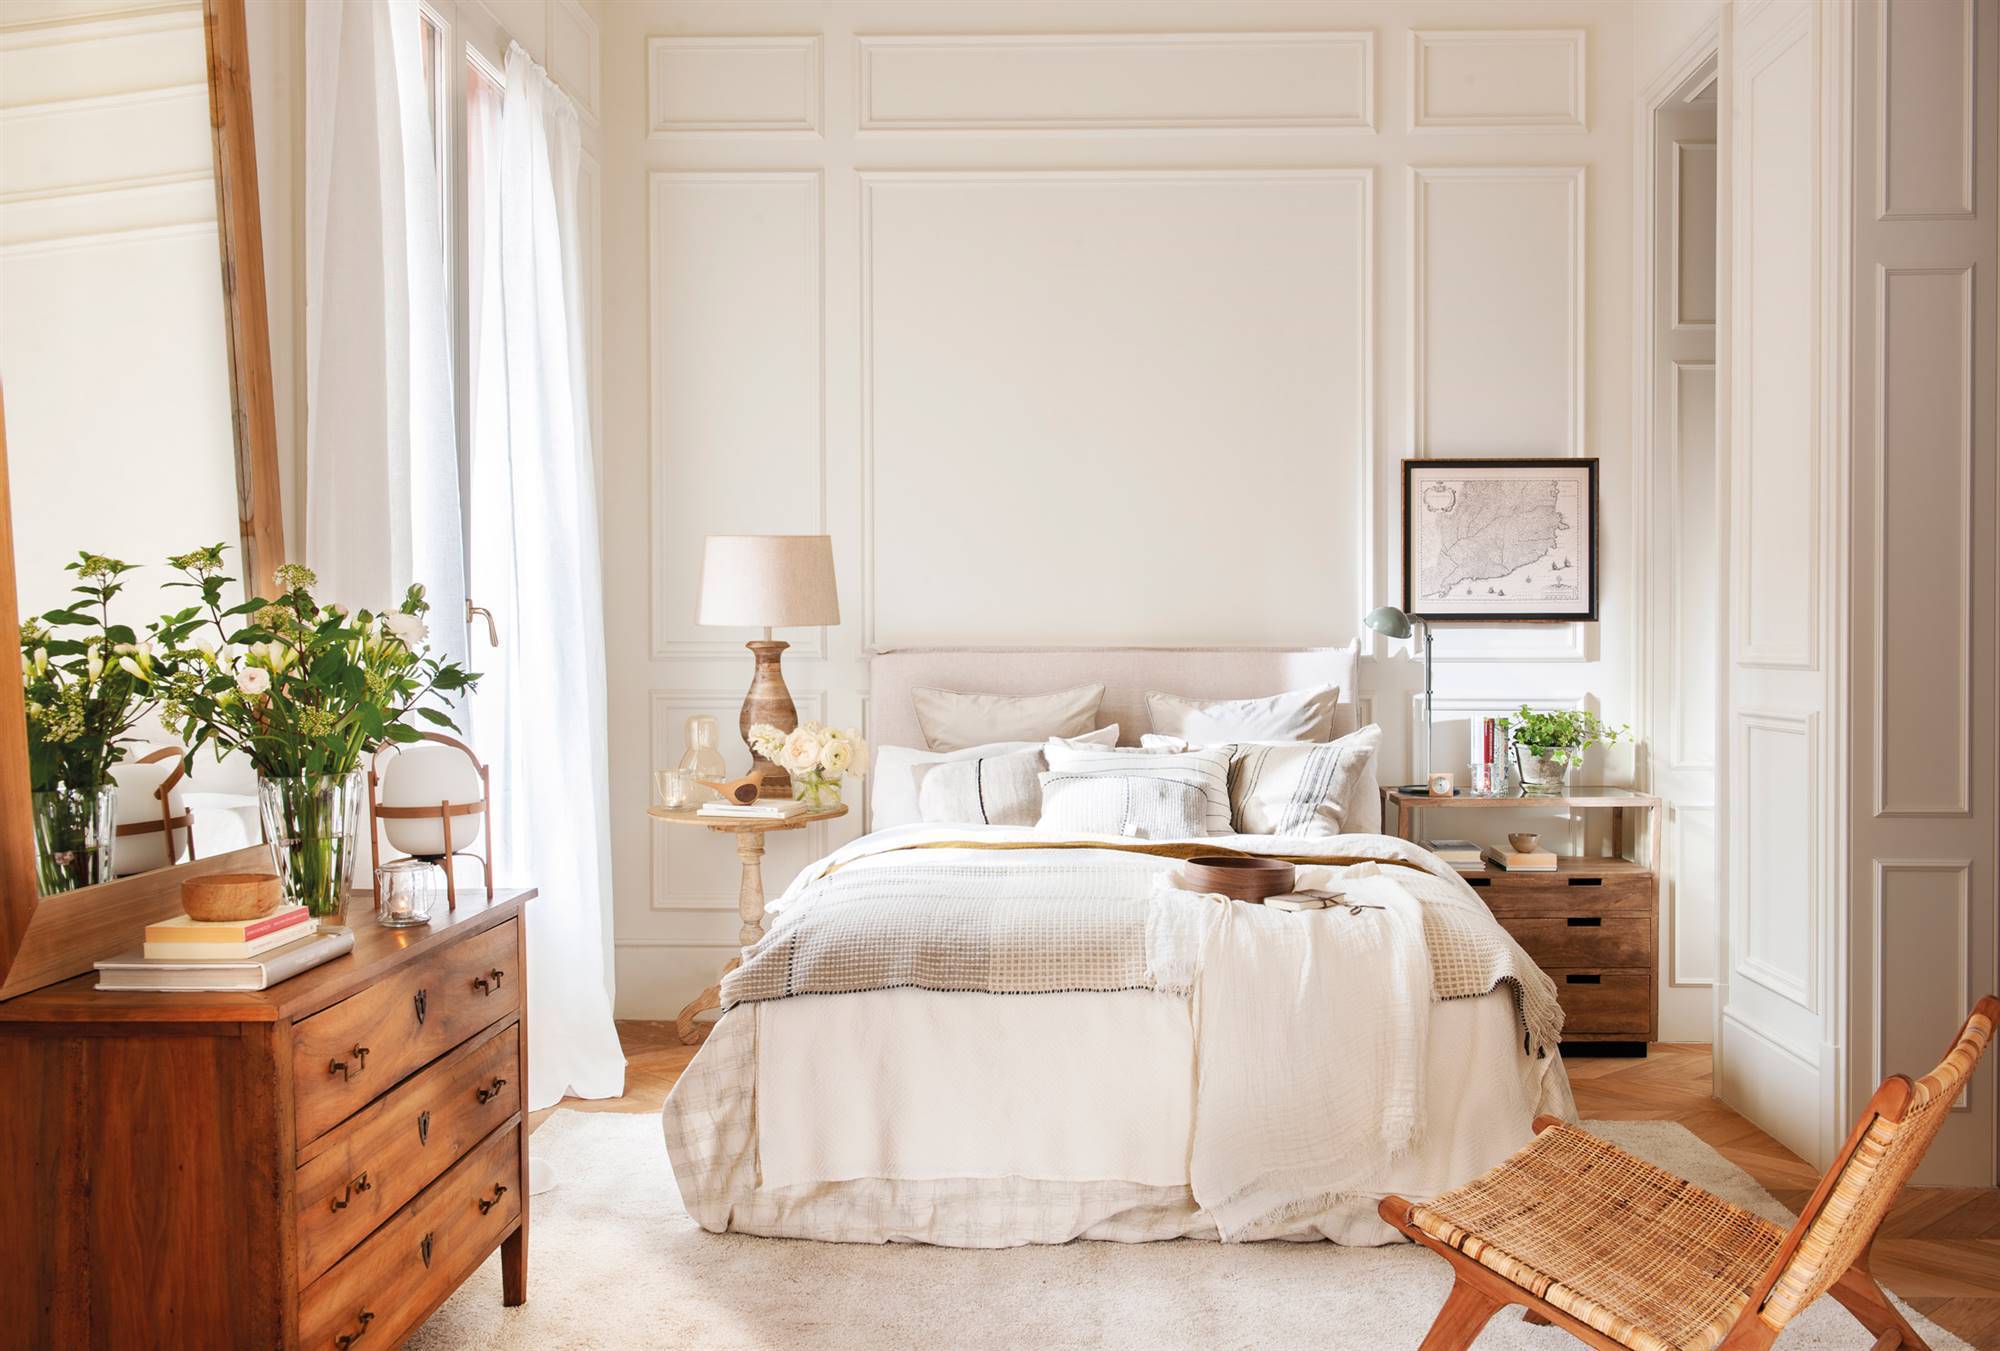 Dormitorio clásico en blanco y madera. 